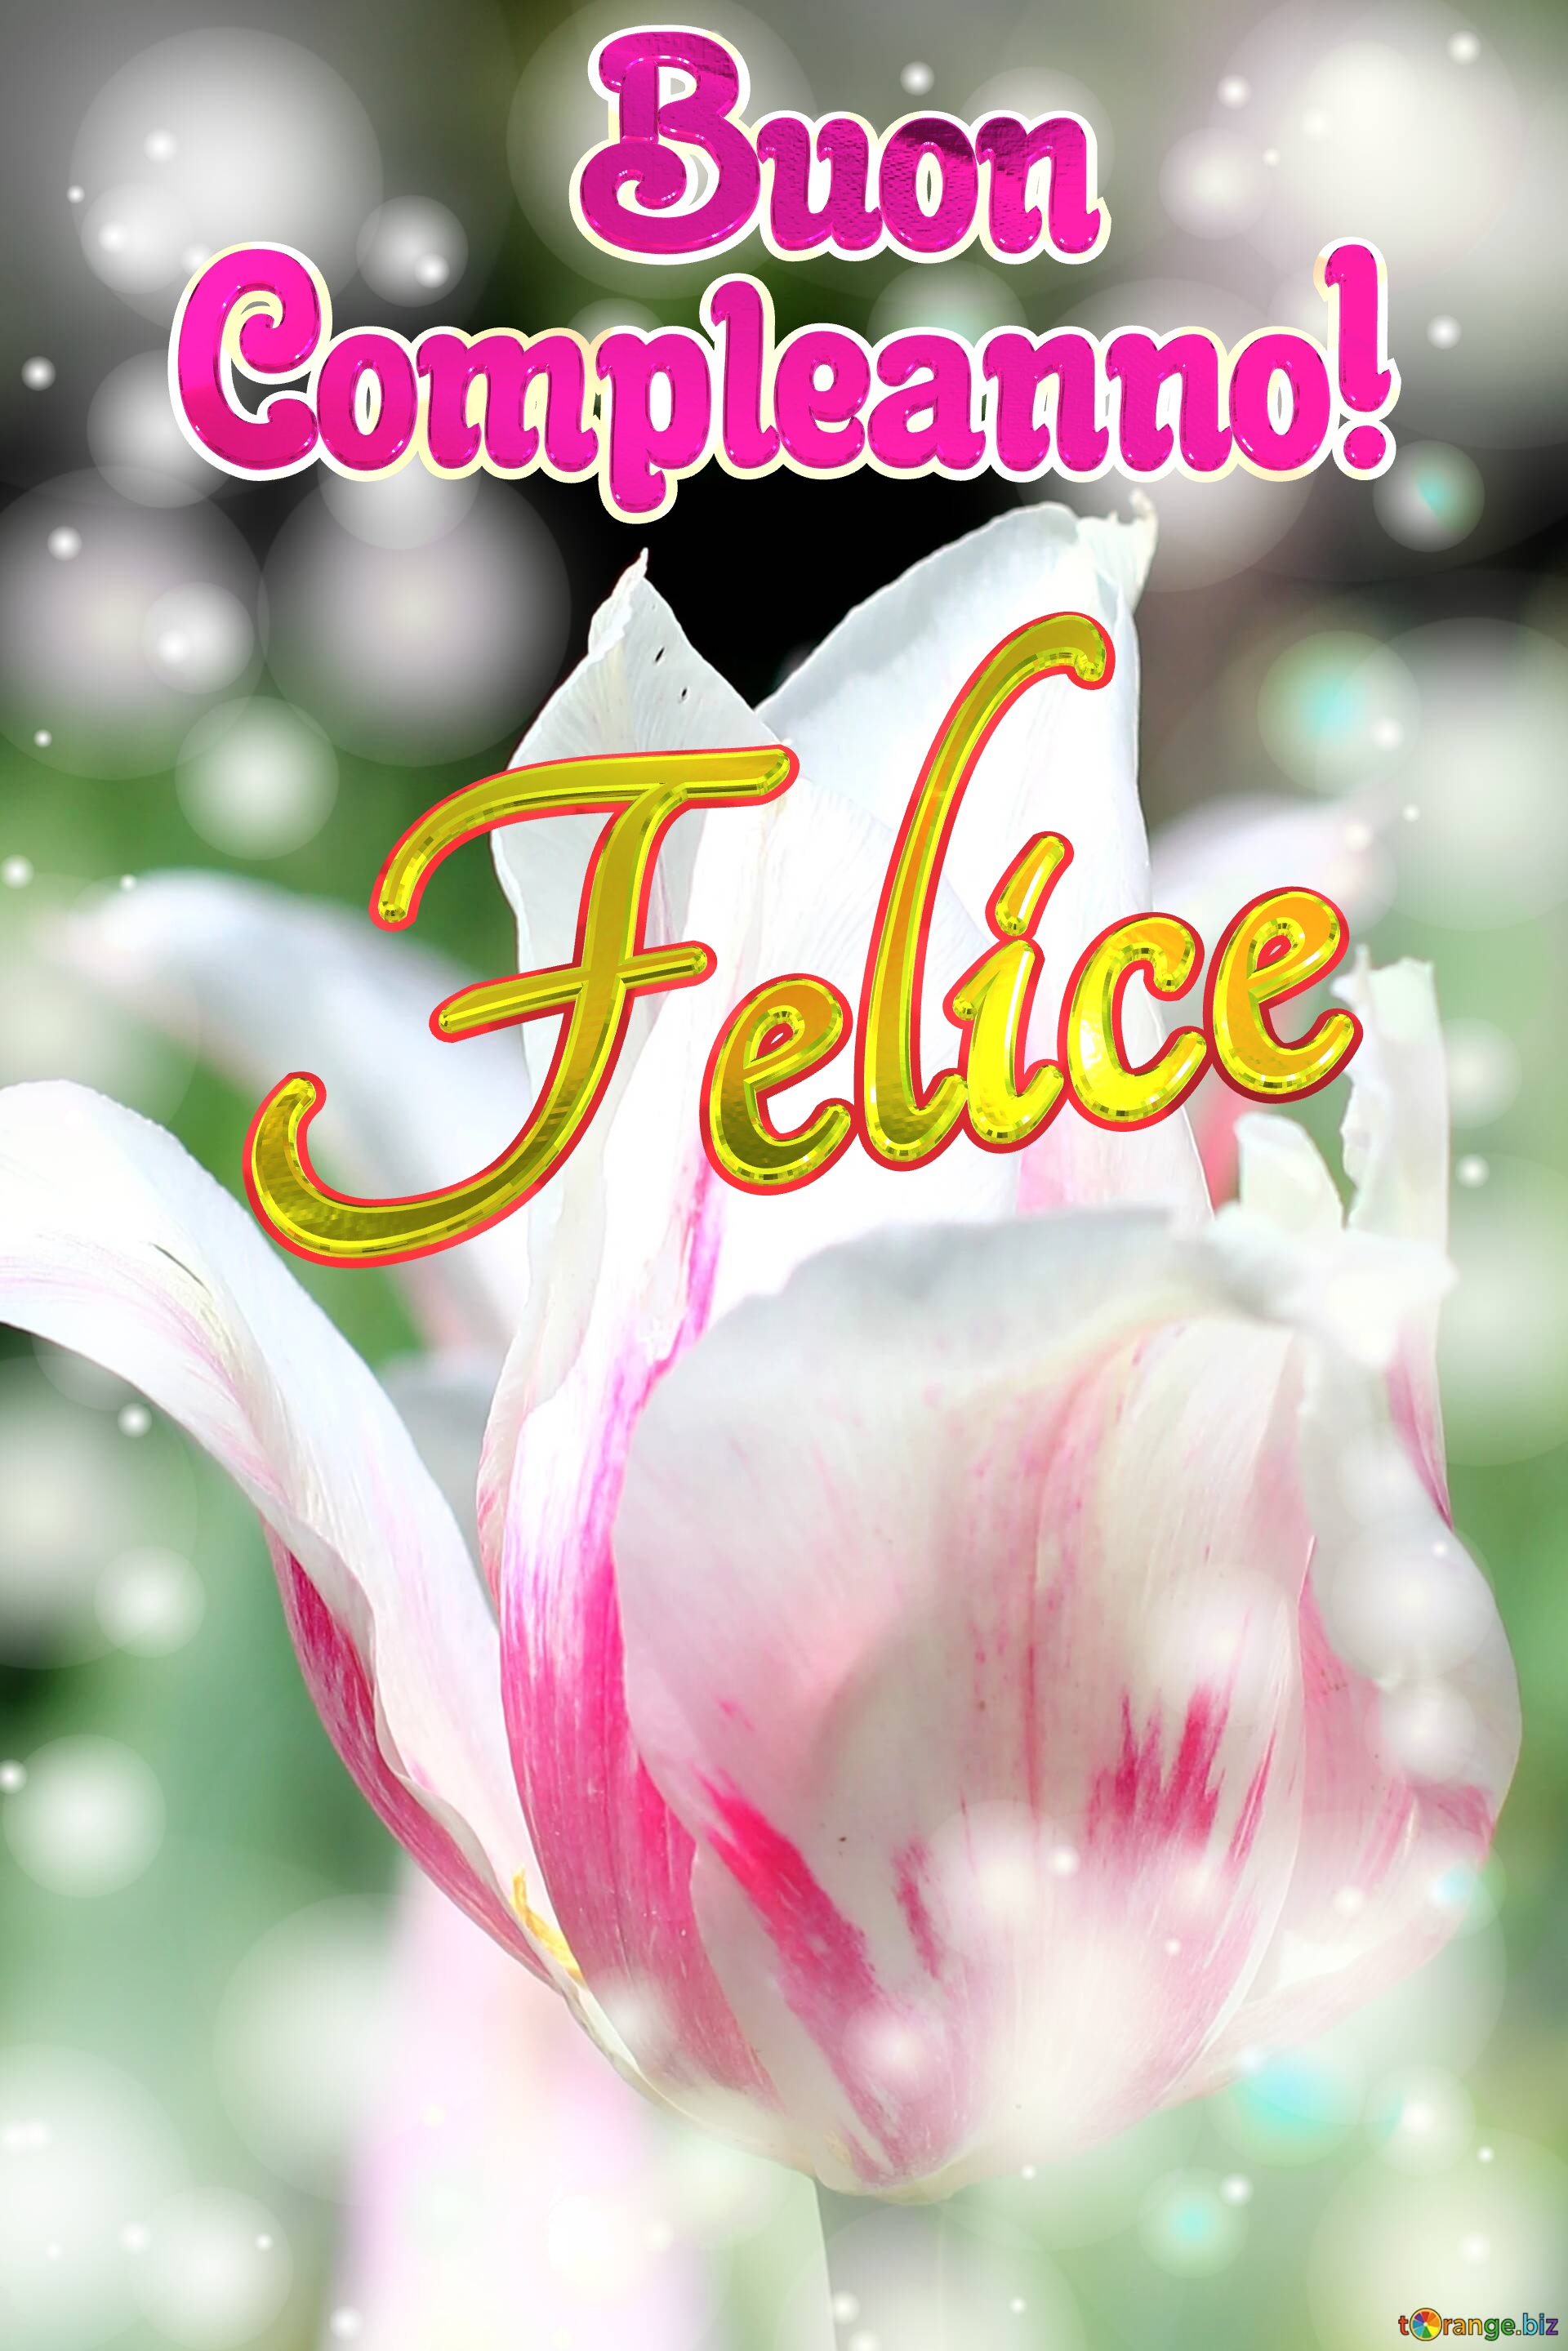       Buon  Compleanno! Felice  Buona primavera con questi bellissimi tulipani! №0